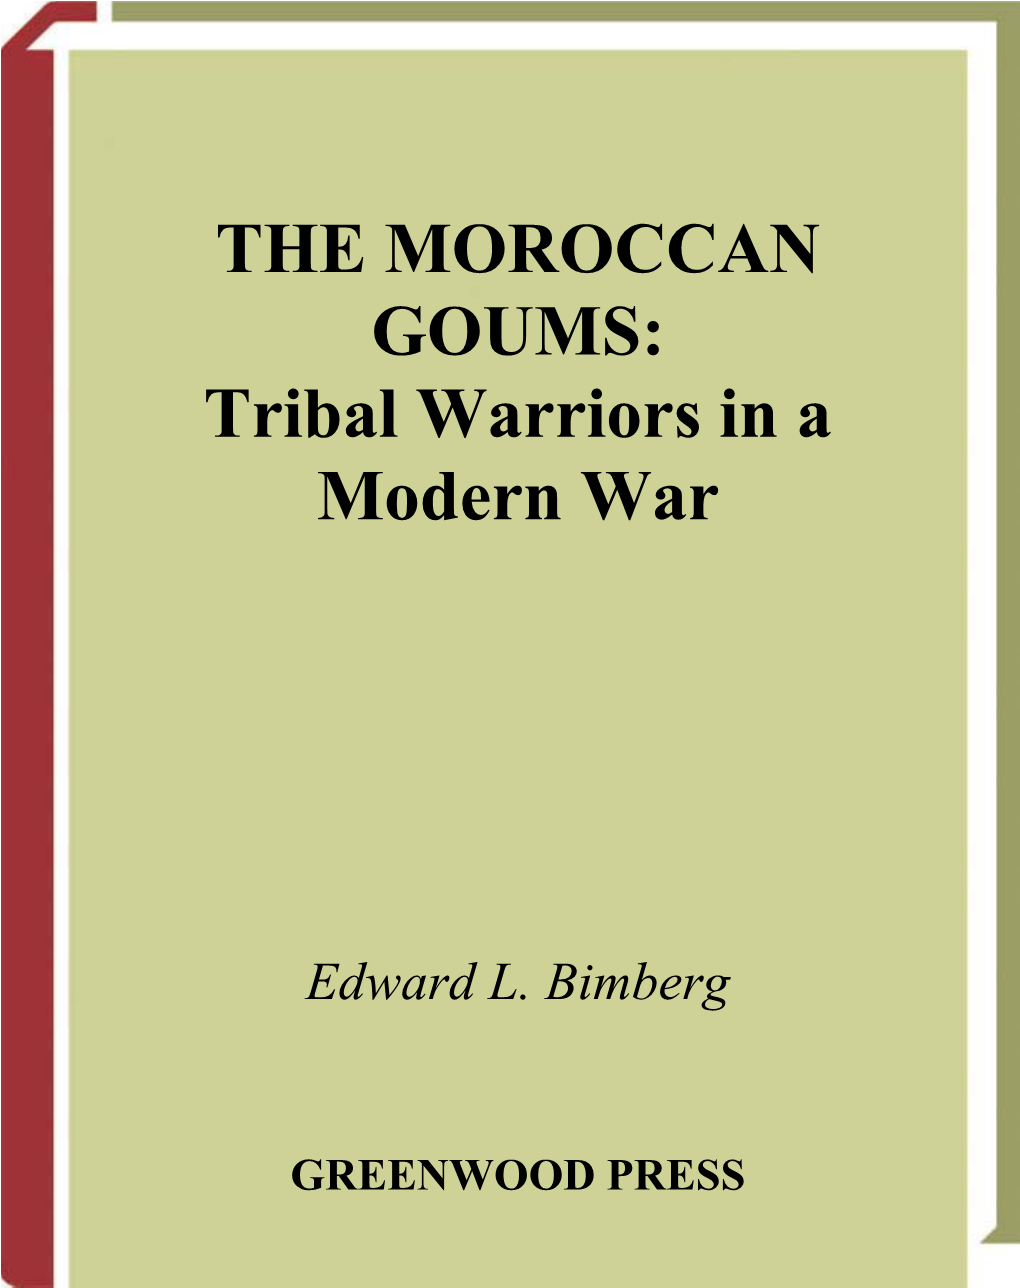 THE MOROCCAN GOUMS: Tribal Warriors in a Modern War